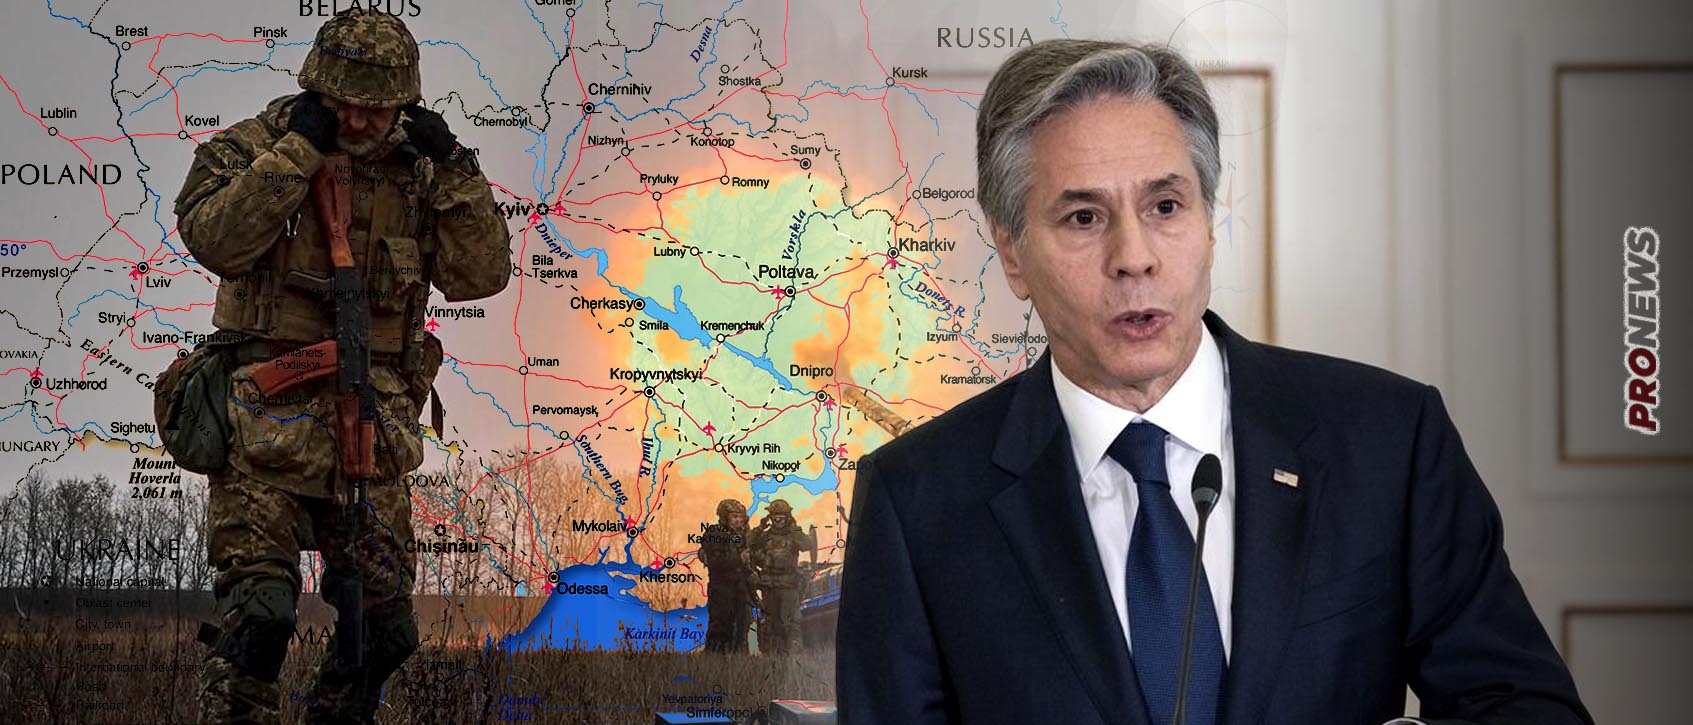 Ο Α.Μπλίνκεν «μπλοκάρει» ακόμα και την κατάπαυση του πυρός που πρότεινε το Πεκίνο στην Ουκρανία